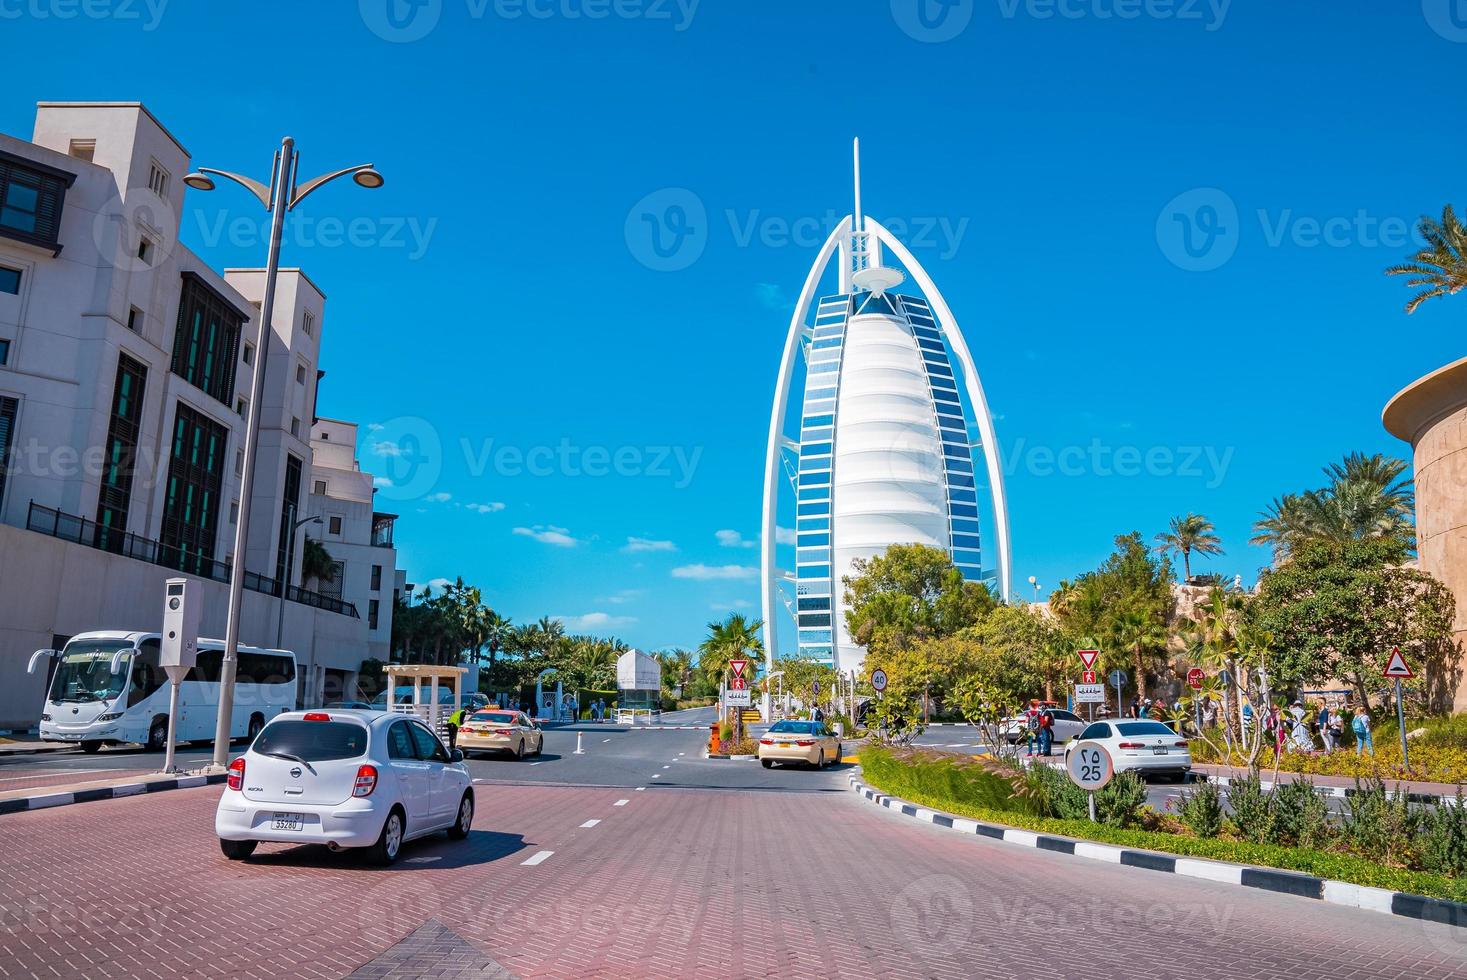 vista do hotel de luxo burj al arab visto de medinat jumeirah, dubai foto